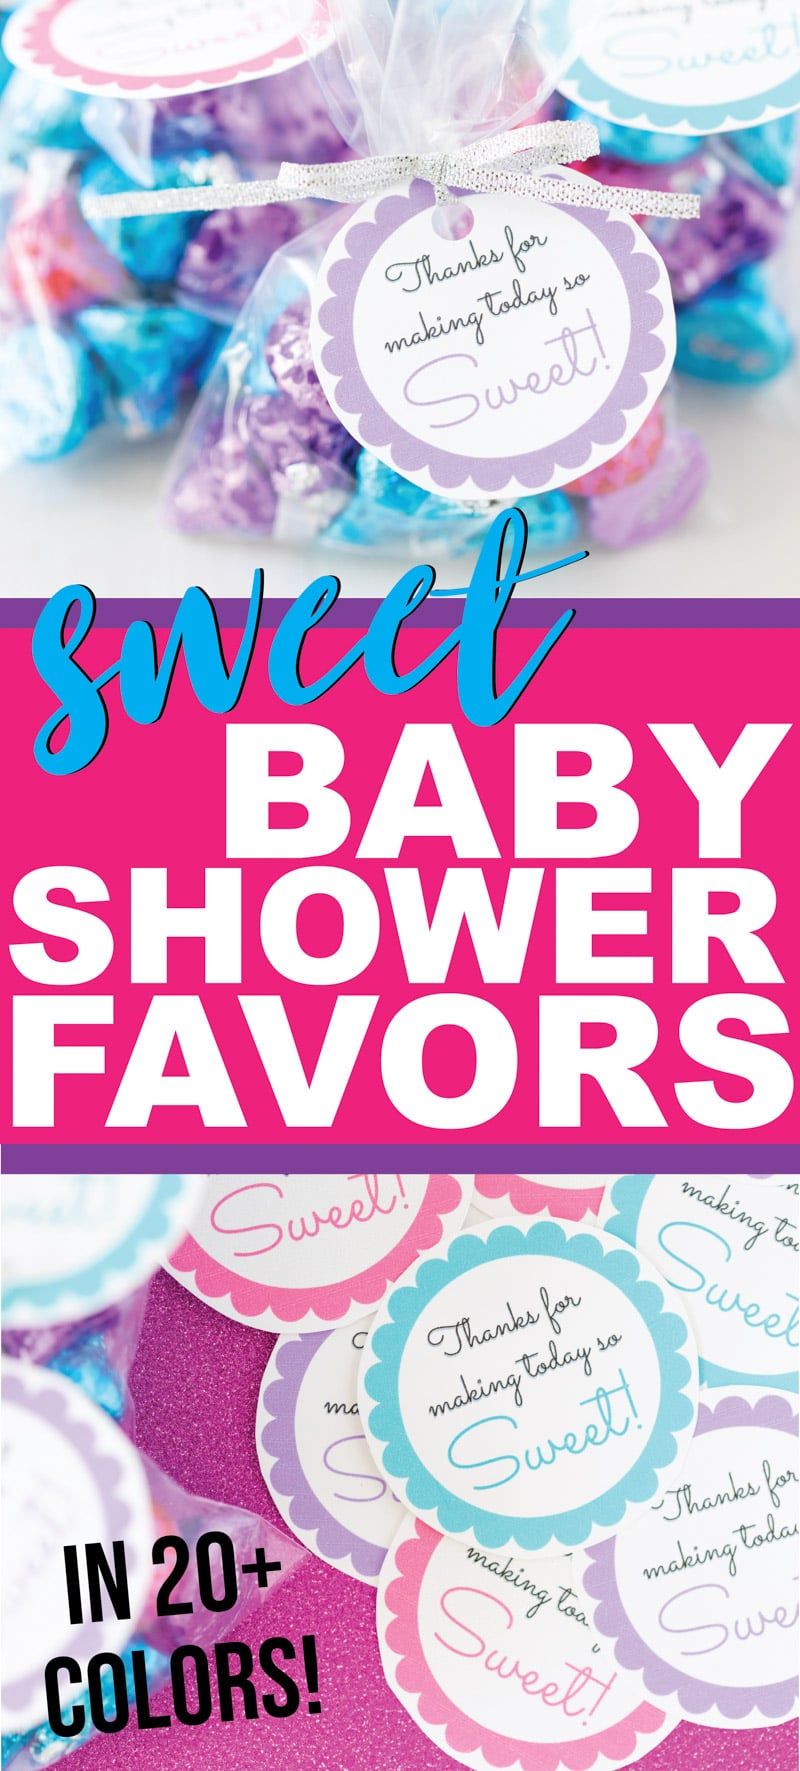 Favores de baby shower baratos para cualquier tema de baby shower